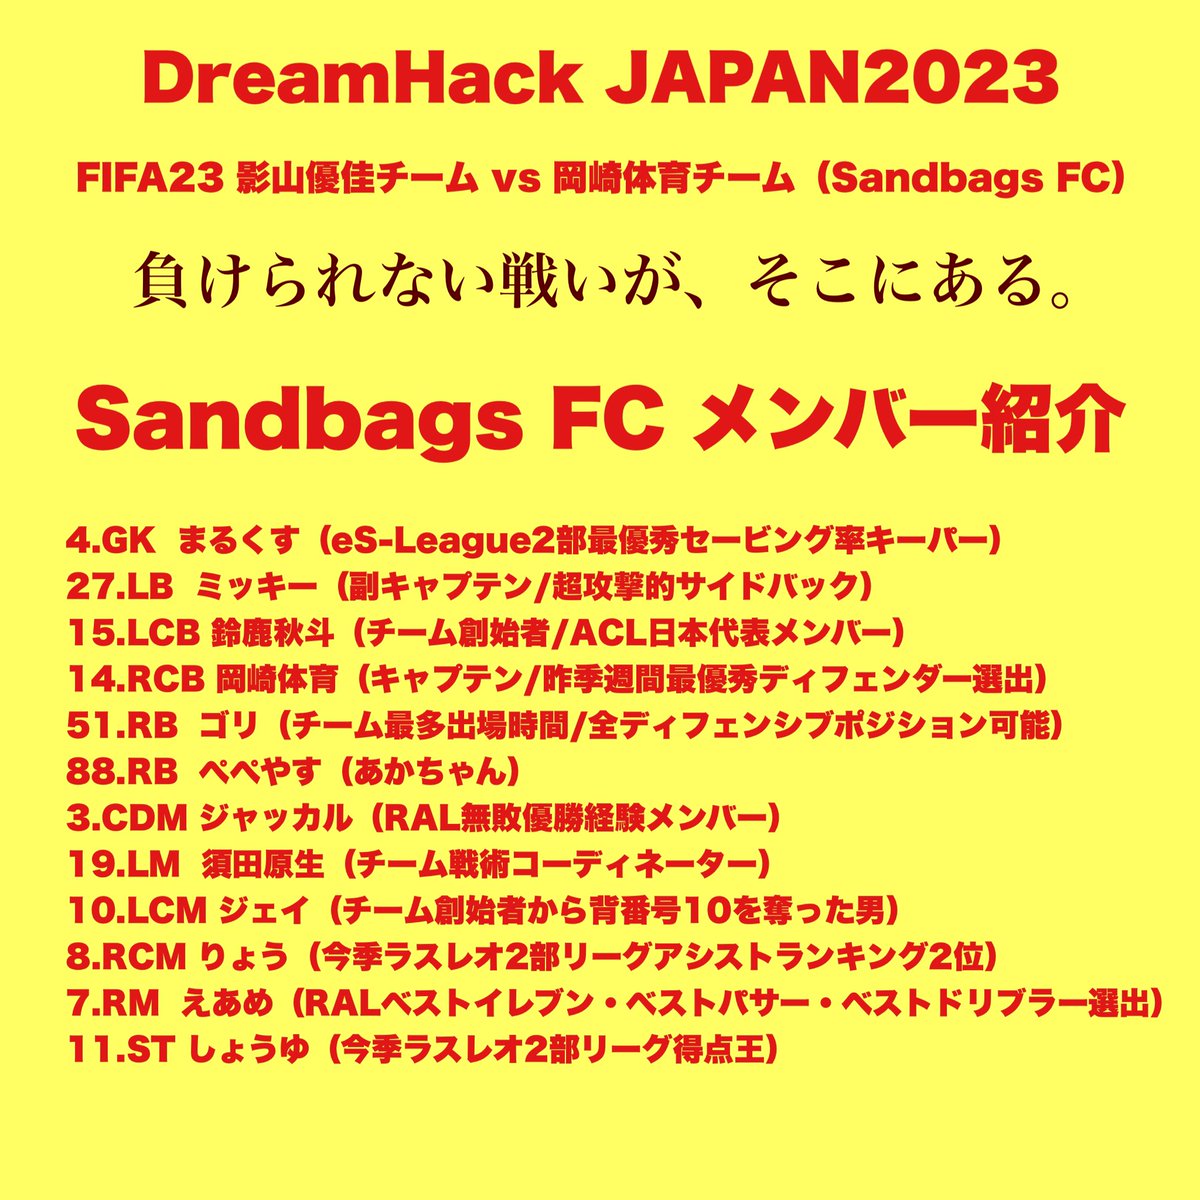 【DreamHack JAPAN】

明日、ついに戦いの火蓋が切って落とされる。

最高のメンバーを揃え、向かうところ敵なしのサンドバッグス。

サッカー元日本代表やプロゲーマーを擁する影山軍にどのような戦いを繰り広げるのか。

幕張メッセにて、その目で確かめろ！

#DreamHackJapan 
#DHJapan #DHJ